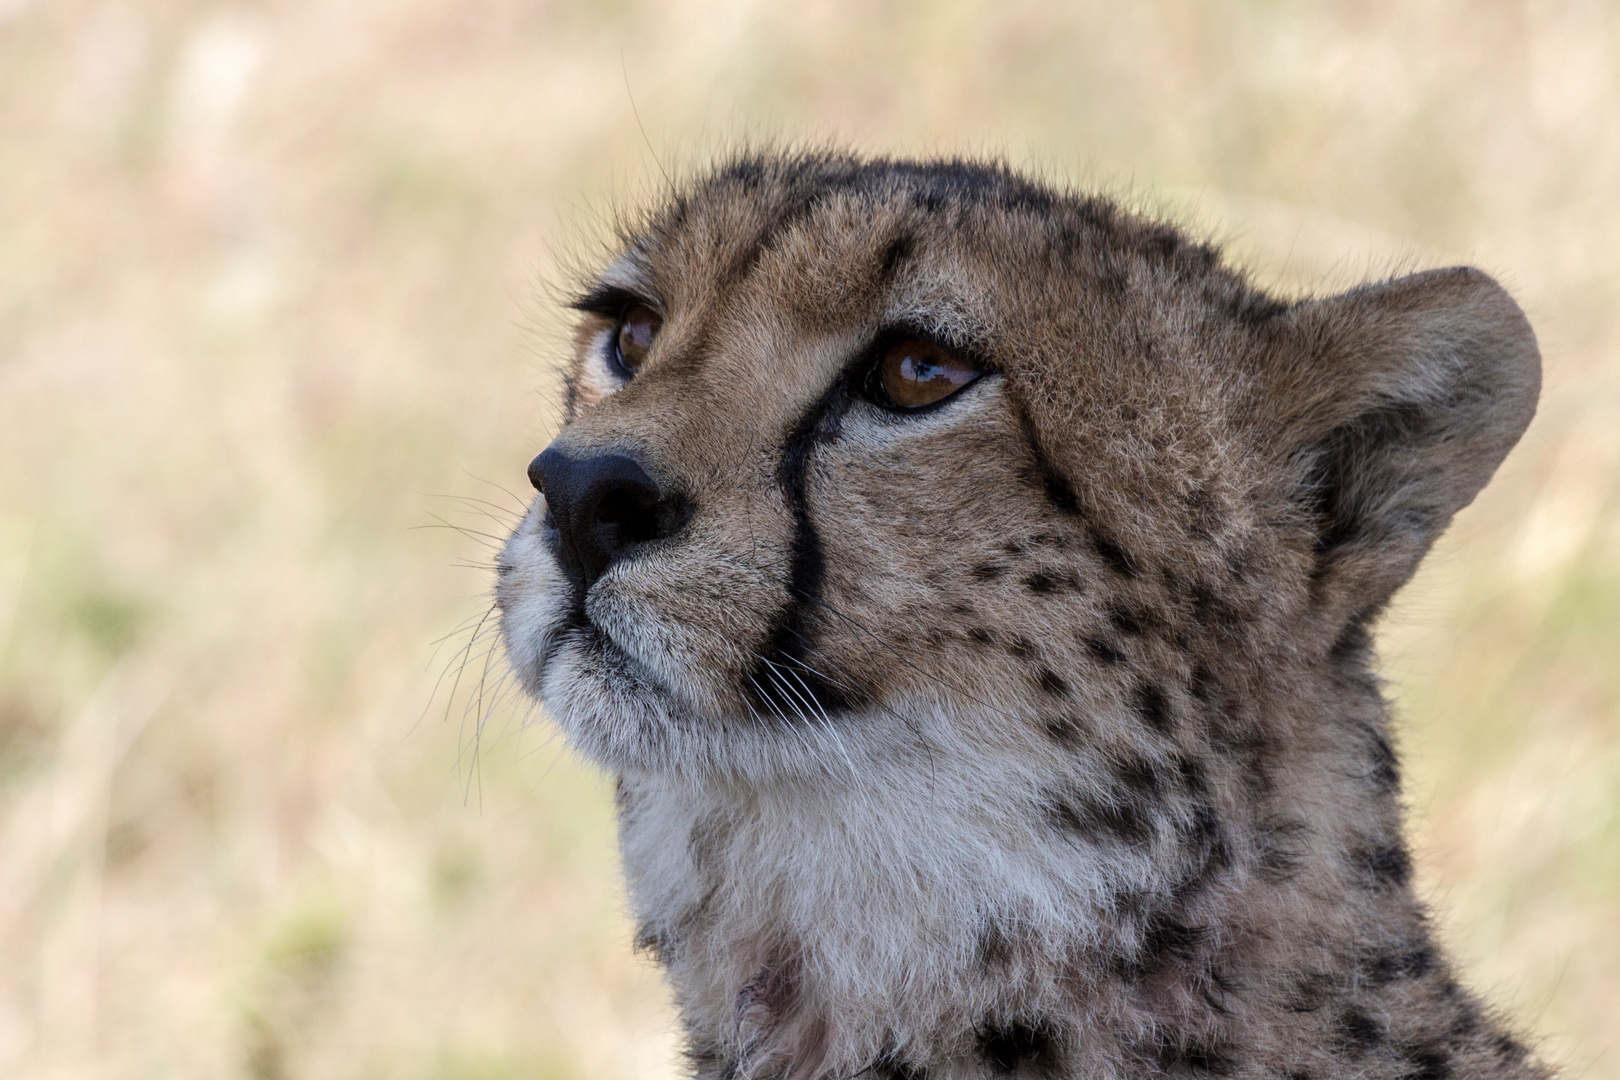 Cheetah III